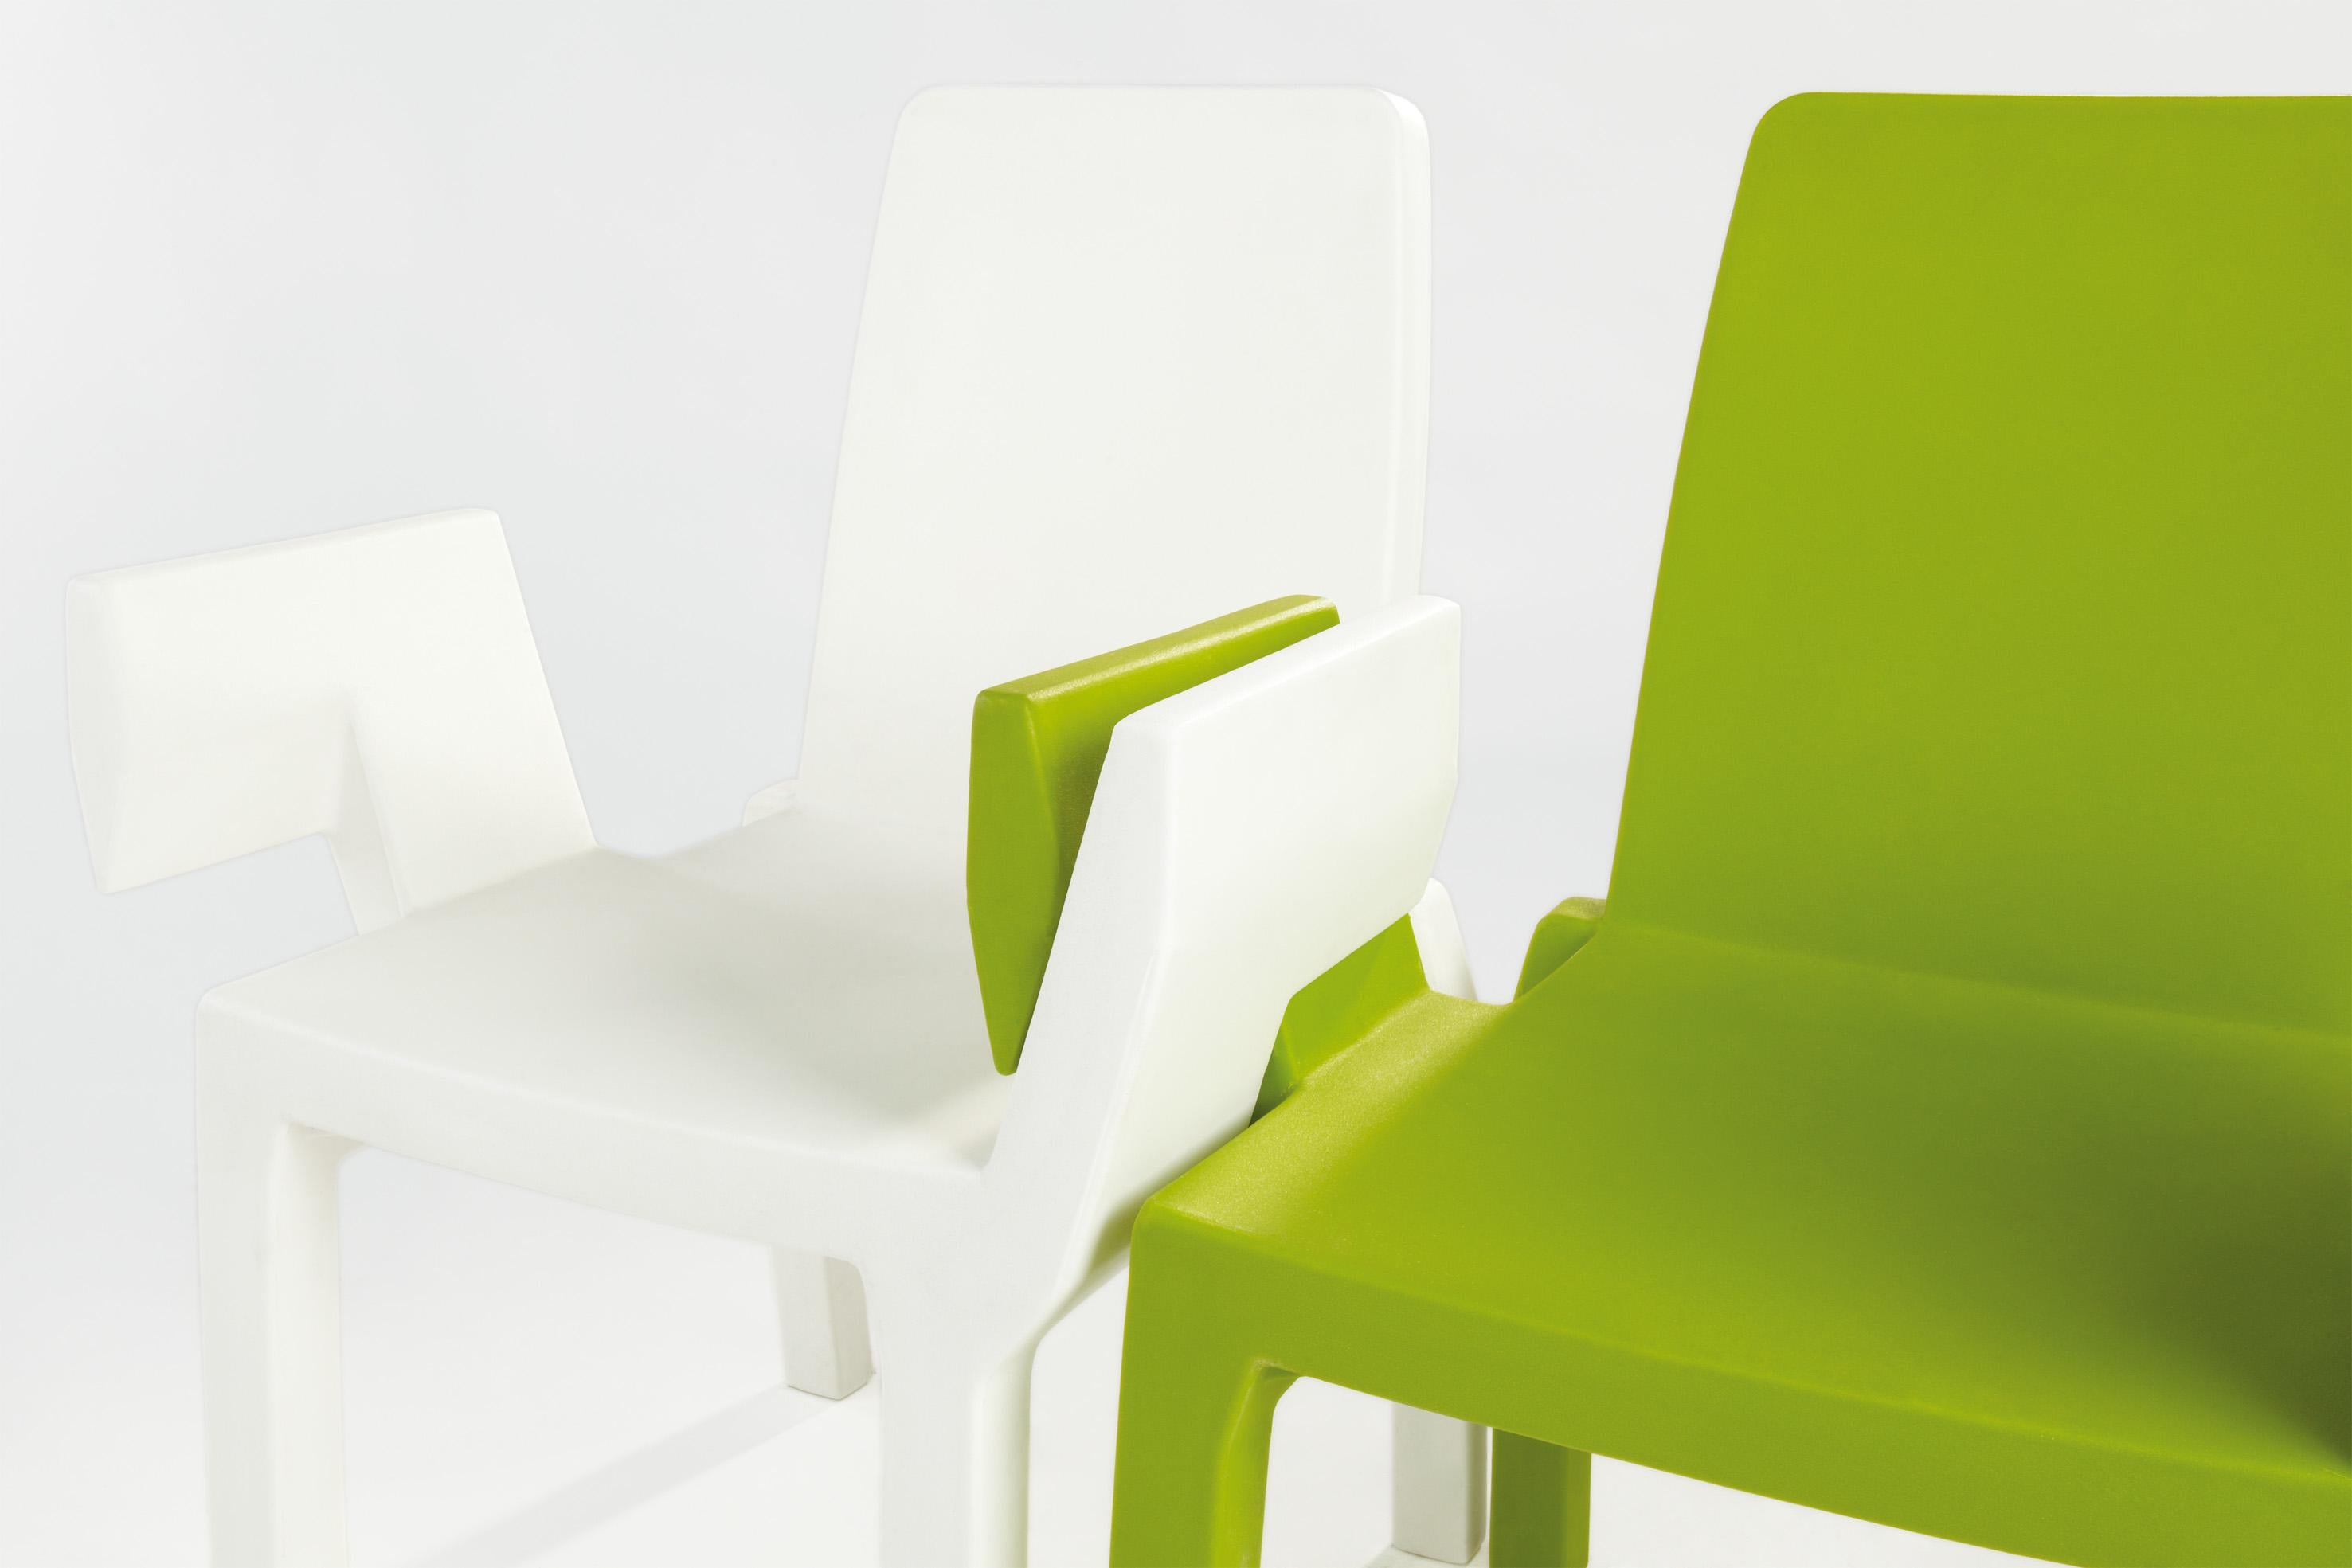 Chaise Doublix blanc laiteux par Stirum Design
Dimensions : 57 x 61 x 88 cm : D 57 x L 61 x H 88 cm. Hauteur du siège : 43 cm.
Matériaux : Polyéthylène.
Poids : 10 kg.

Disponible en différentes couleurs. Ce produit peut être utilisé à l'intérieur